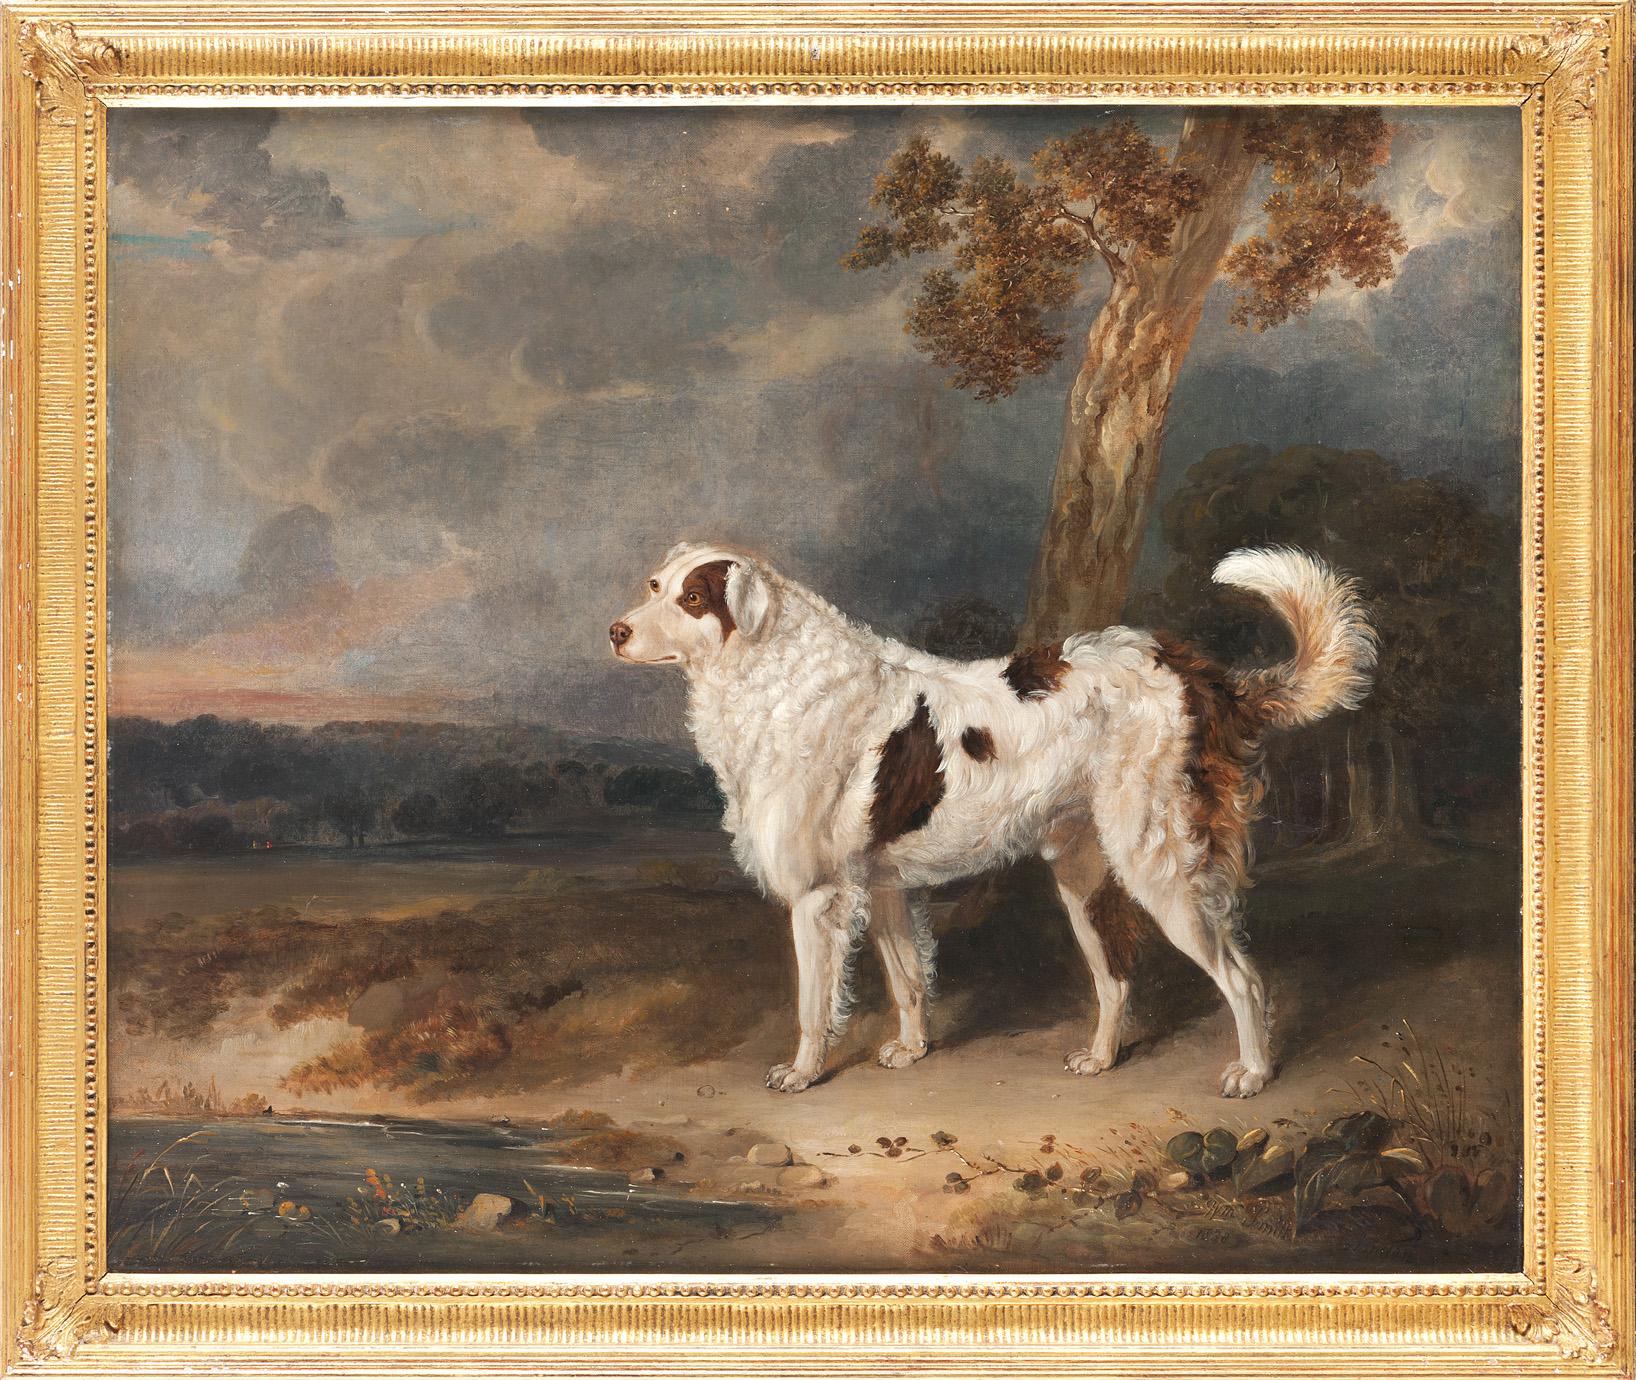 Las obras de William Smith se expusieron regularmente en la Real Academia de Londres entre 1813 y 1859. Sin embargo, poco se sabe de este artista. Vivió en Shropshire y se dedicó a pintar animales y paisajes. Son especialmente comunes las